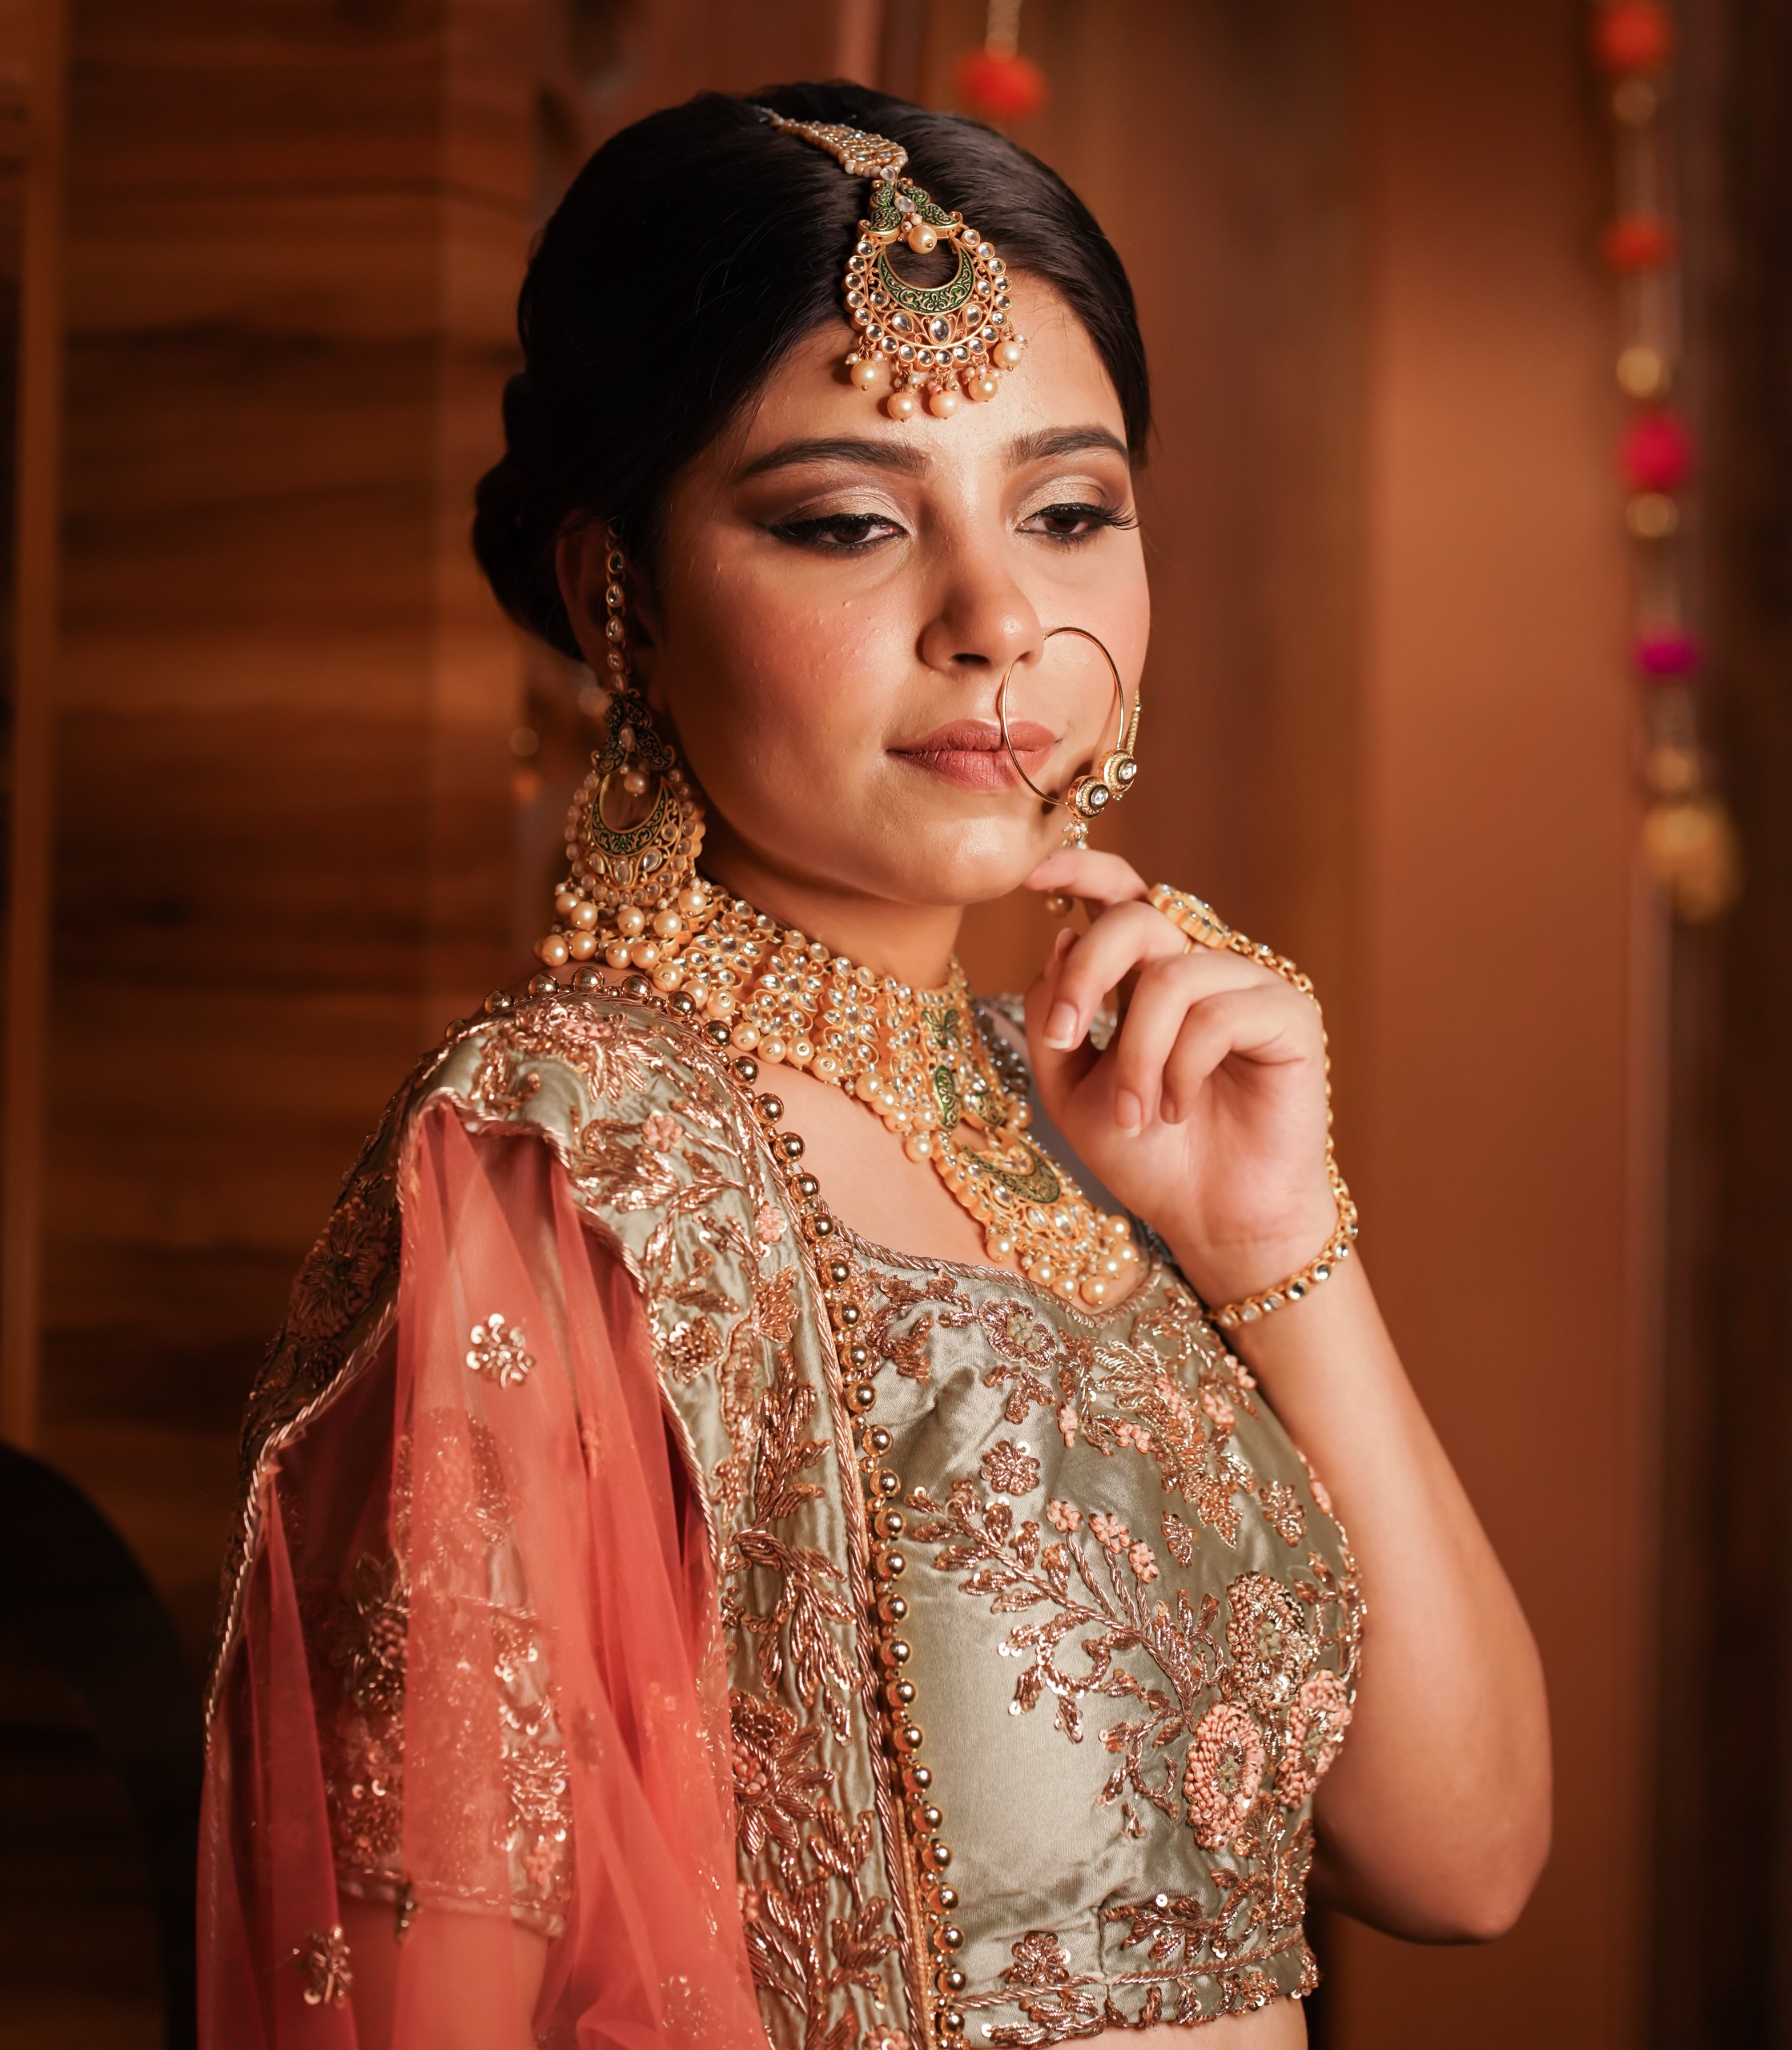 Indian bride look